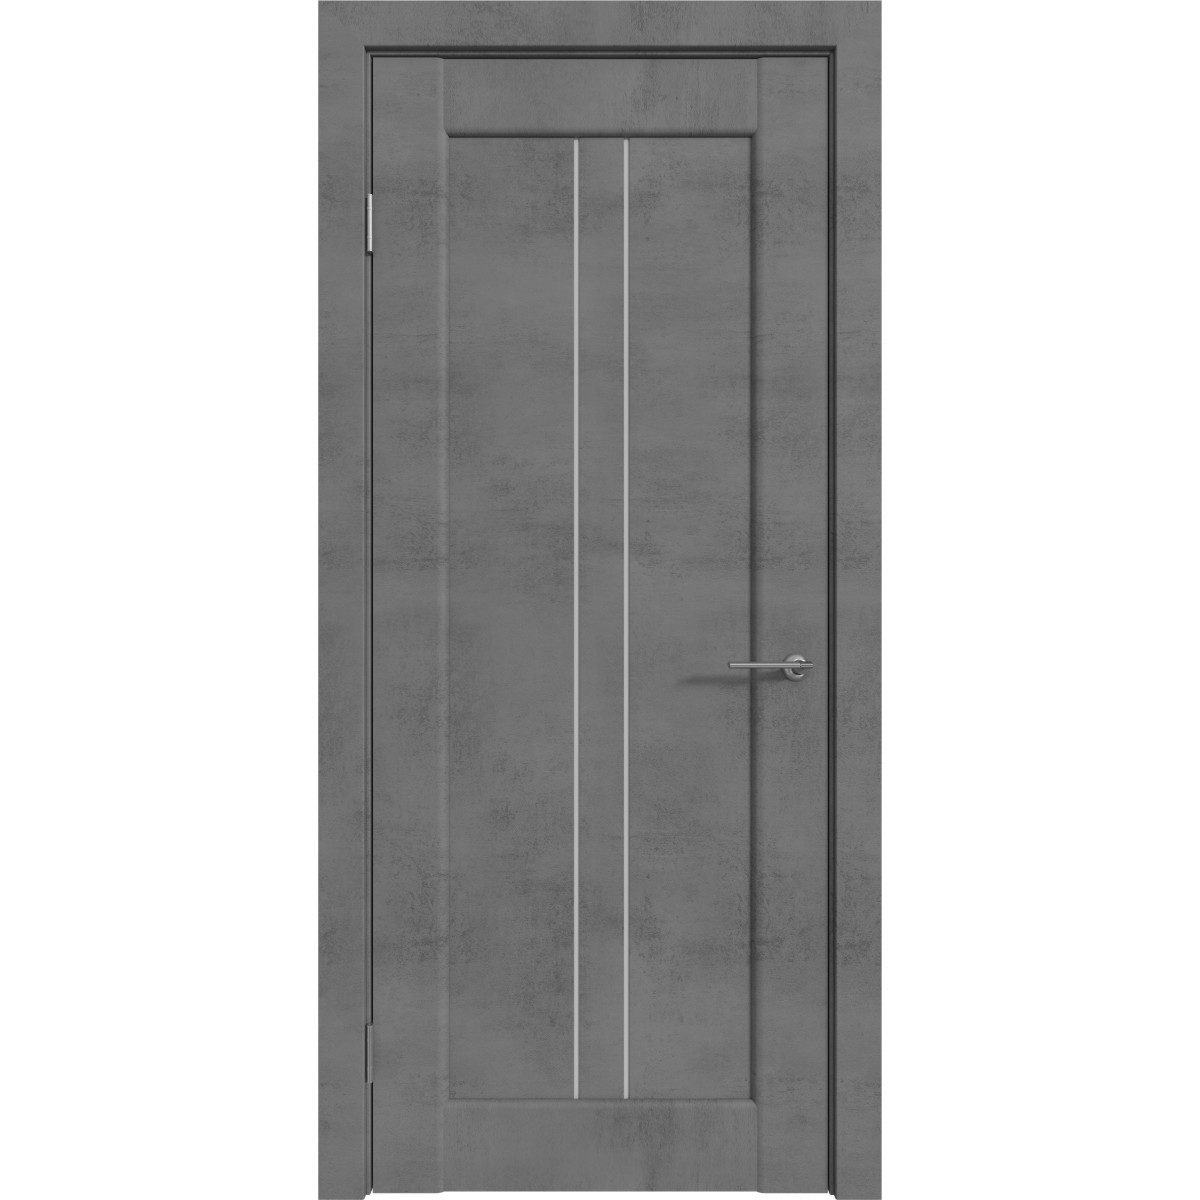 Дверь межкомнатная остекленная с замком и петлями в комплекте Сиэтл 60x200 см ПВХ цвет лофт темный